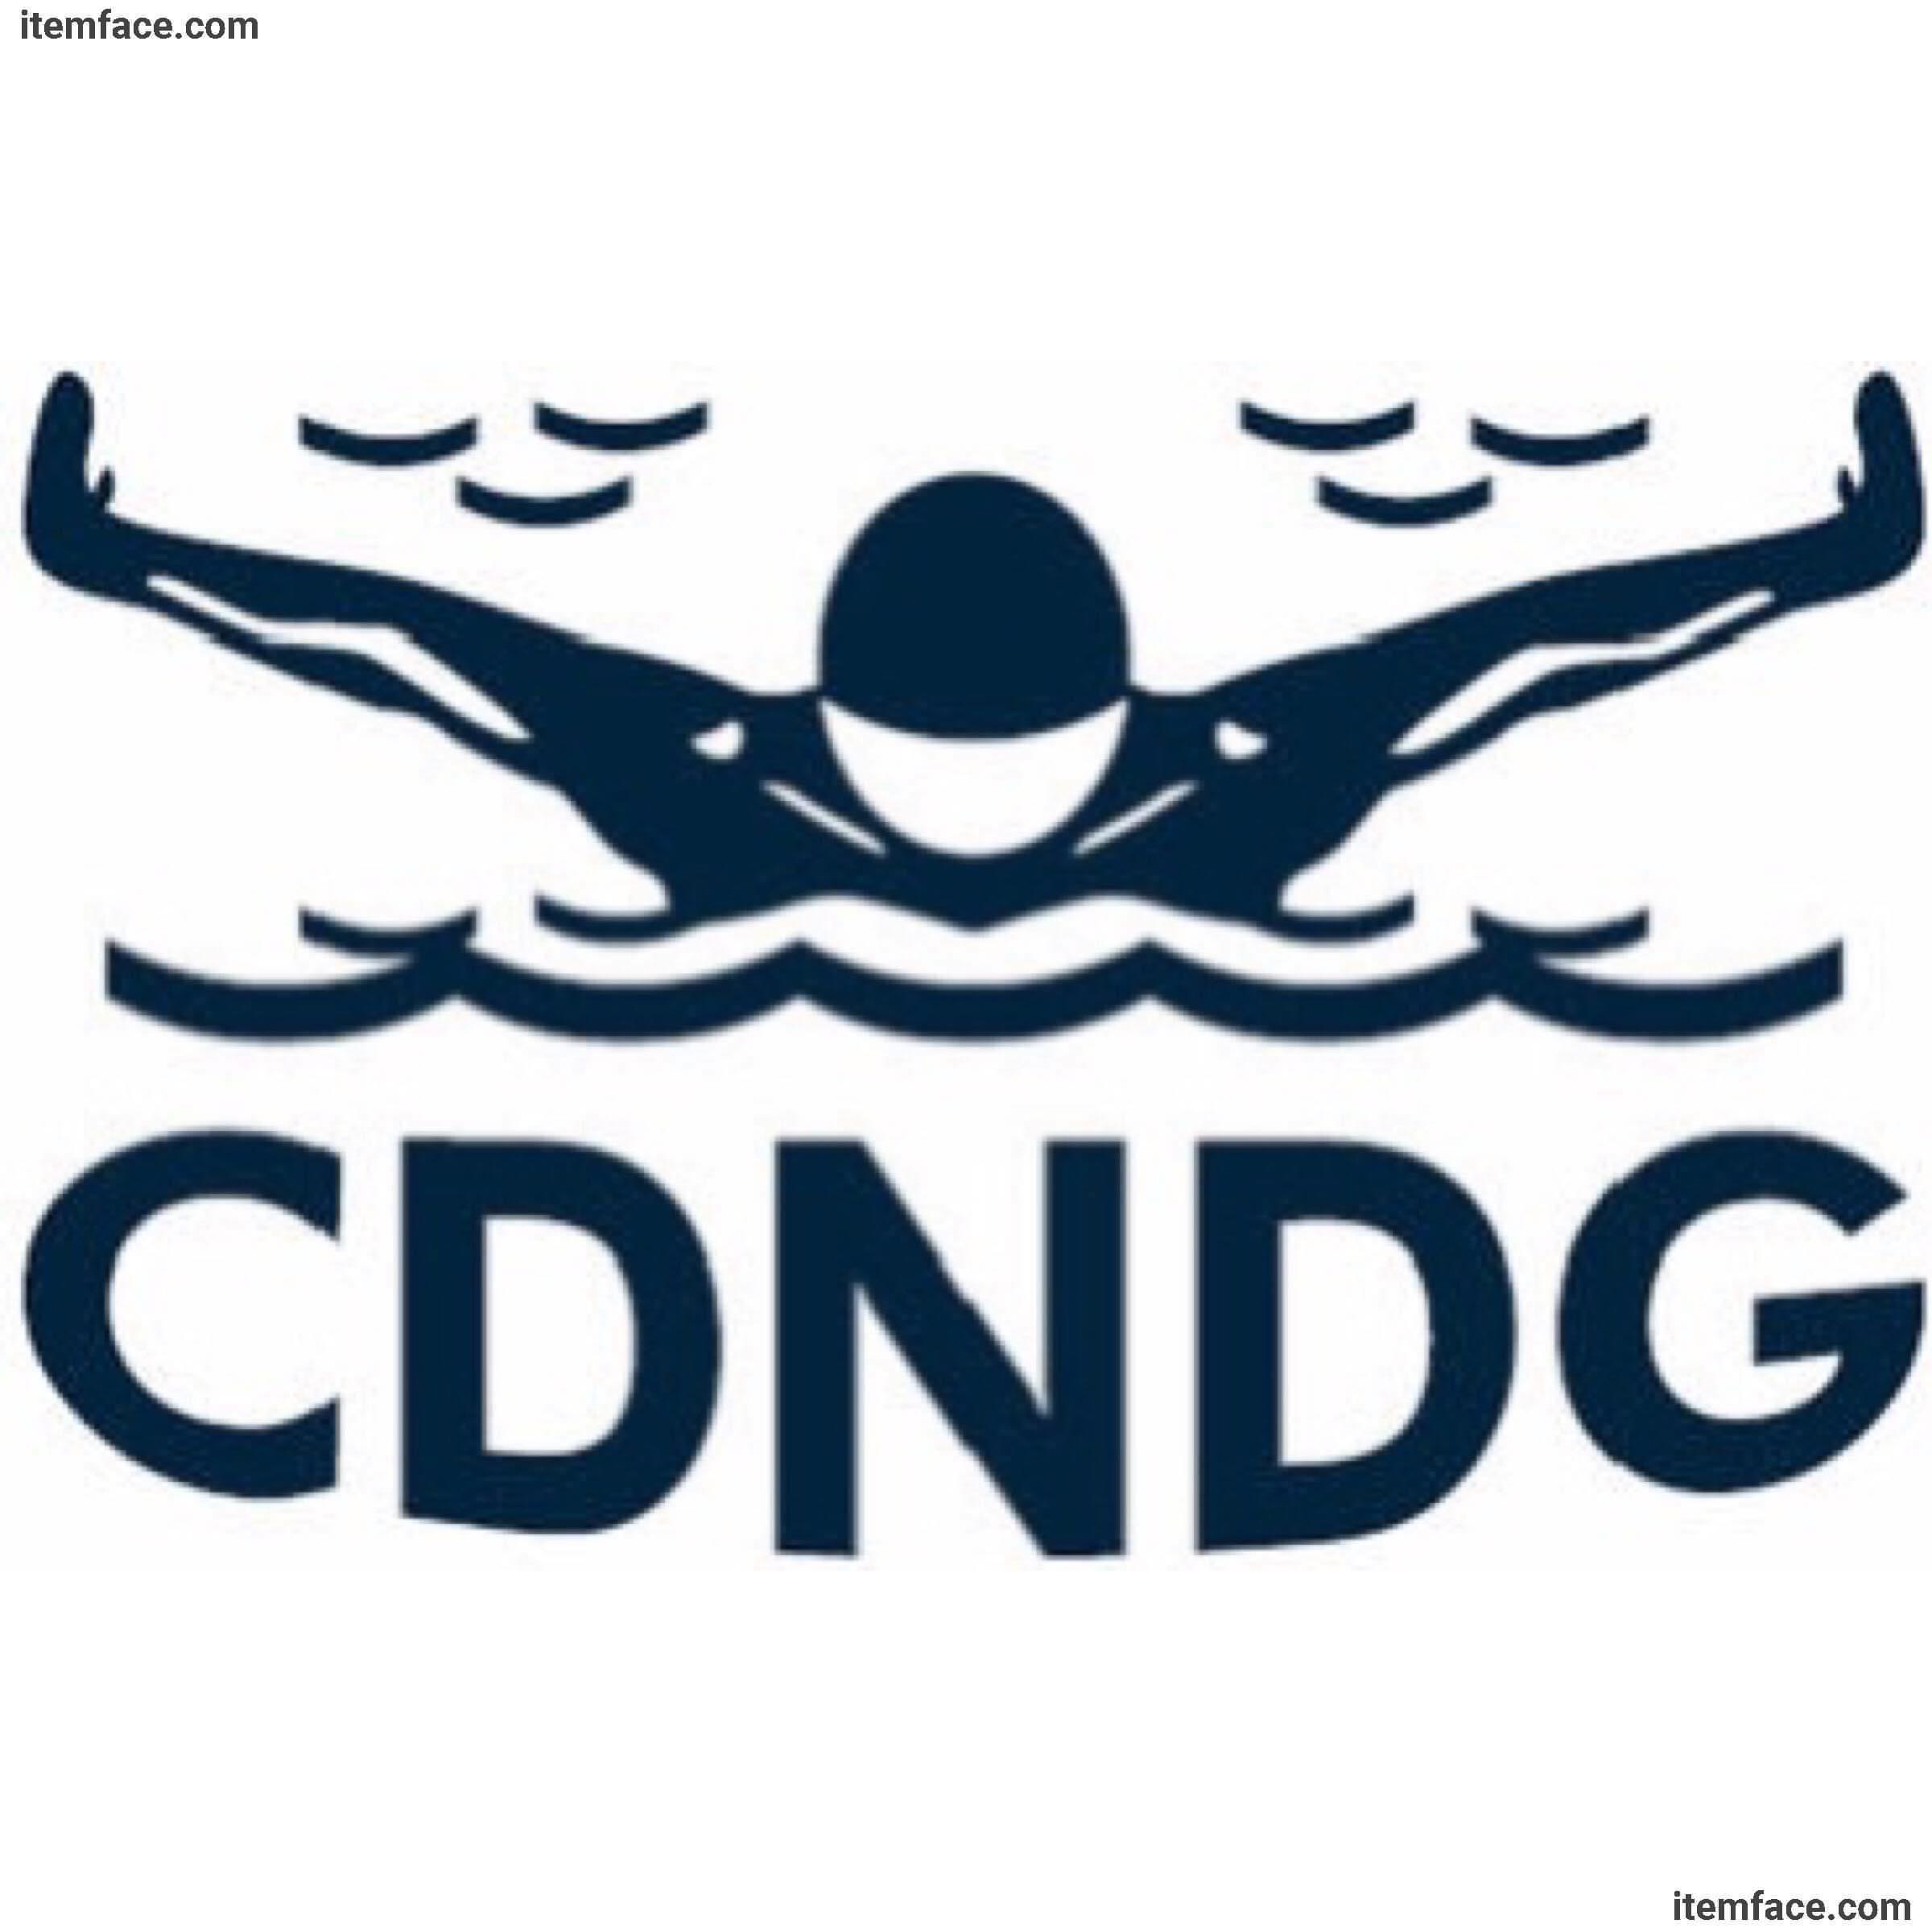 Club Aquatique CDN-NDG (CDNDG) - Sports Club